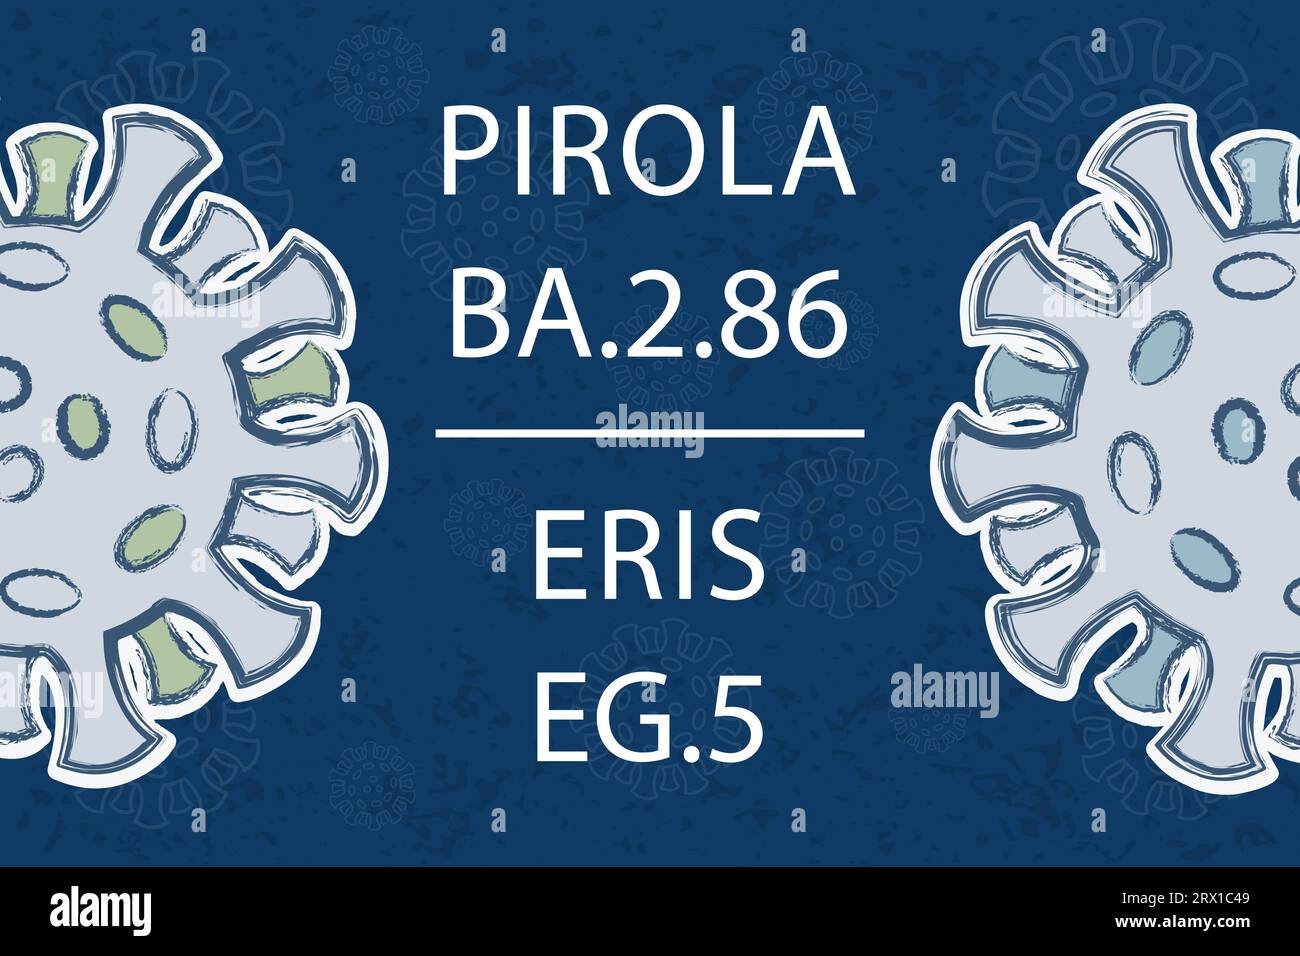 Nuove varianti di Omicron Pirola BA.2,86 ed Eris EG.5. Testo bianco su sfondo blu scuro. Diversi colori delle proteine Spike Illustrazione Vettoriale